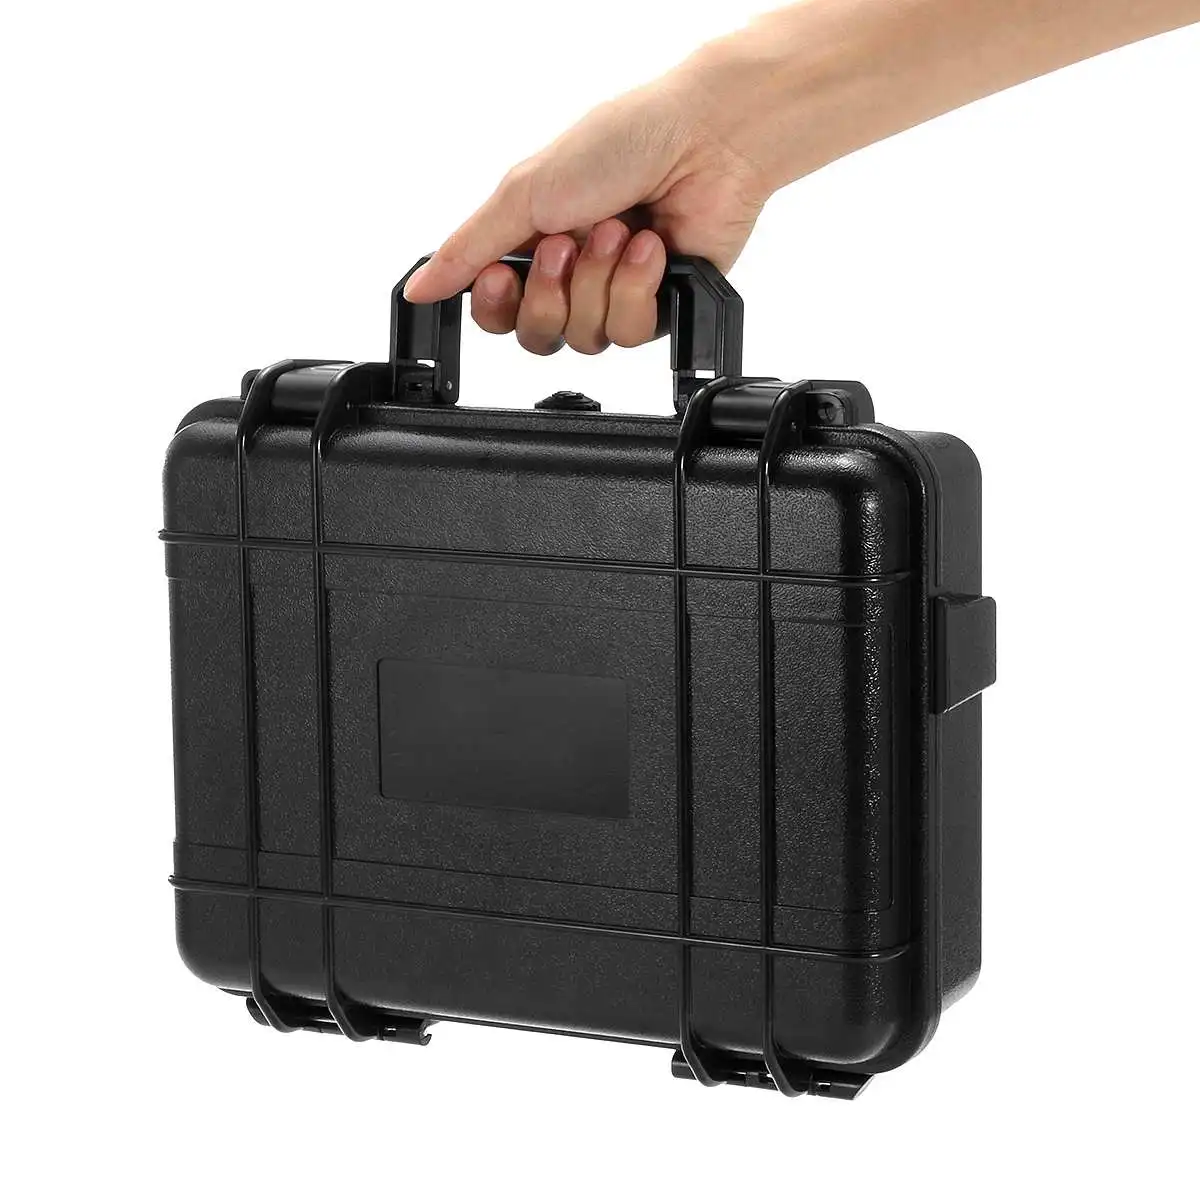 Водонепроницаемый Жесткий Чехол для инструментов, пластиковый ящик для инструментов, защитный ящик для хранения, органайзер, портативный контейнер, черный, 3 размера